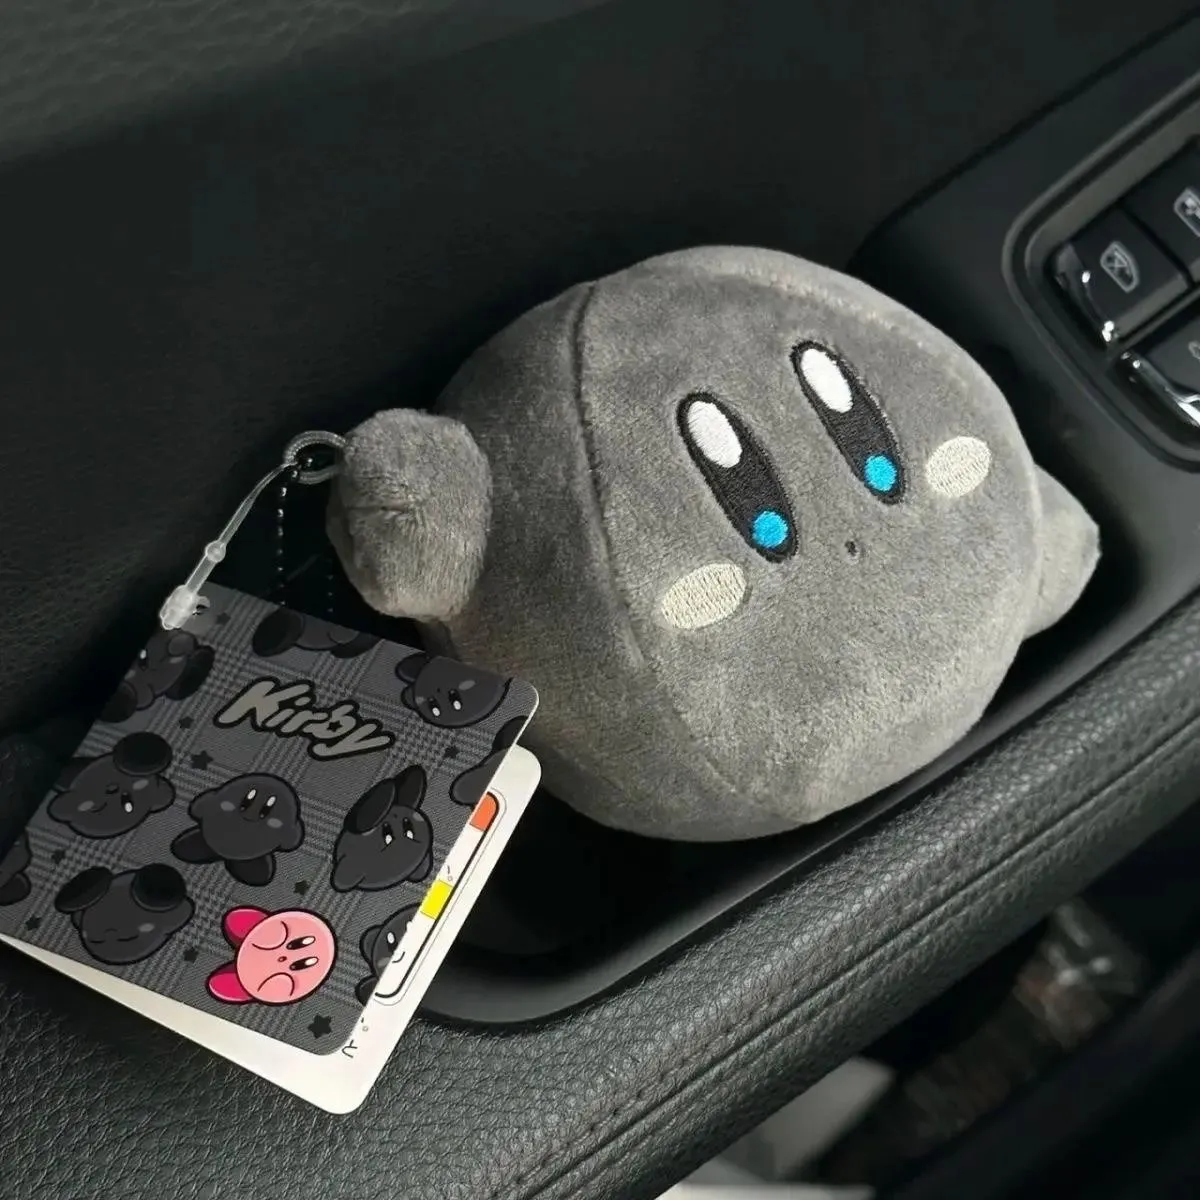 Kawaii Star Kirby Grey Soft Plush Toy